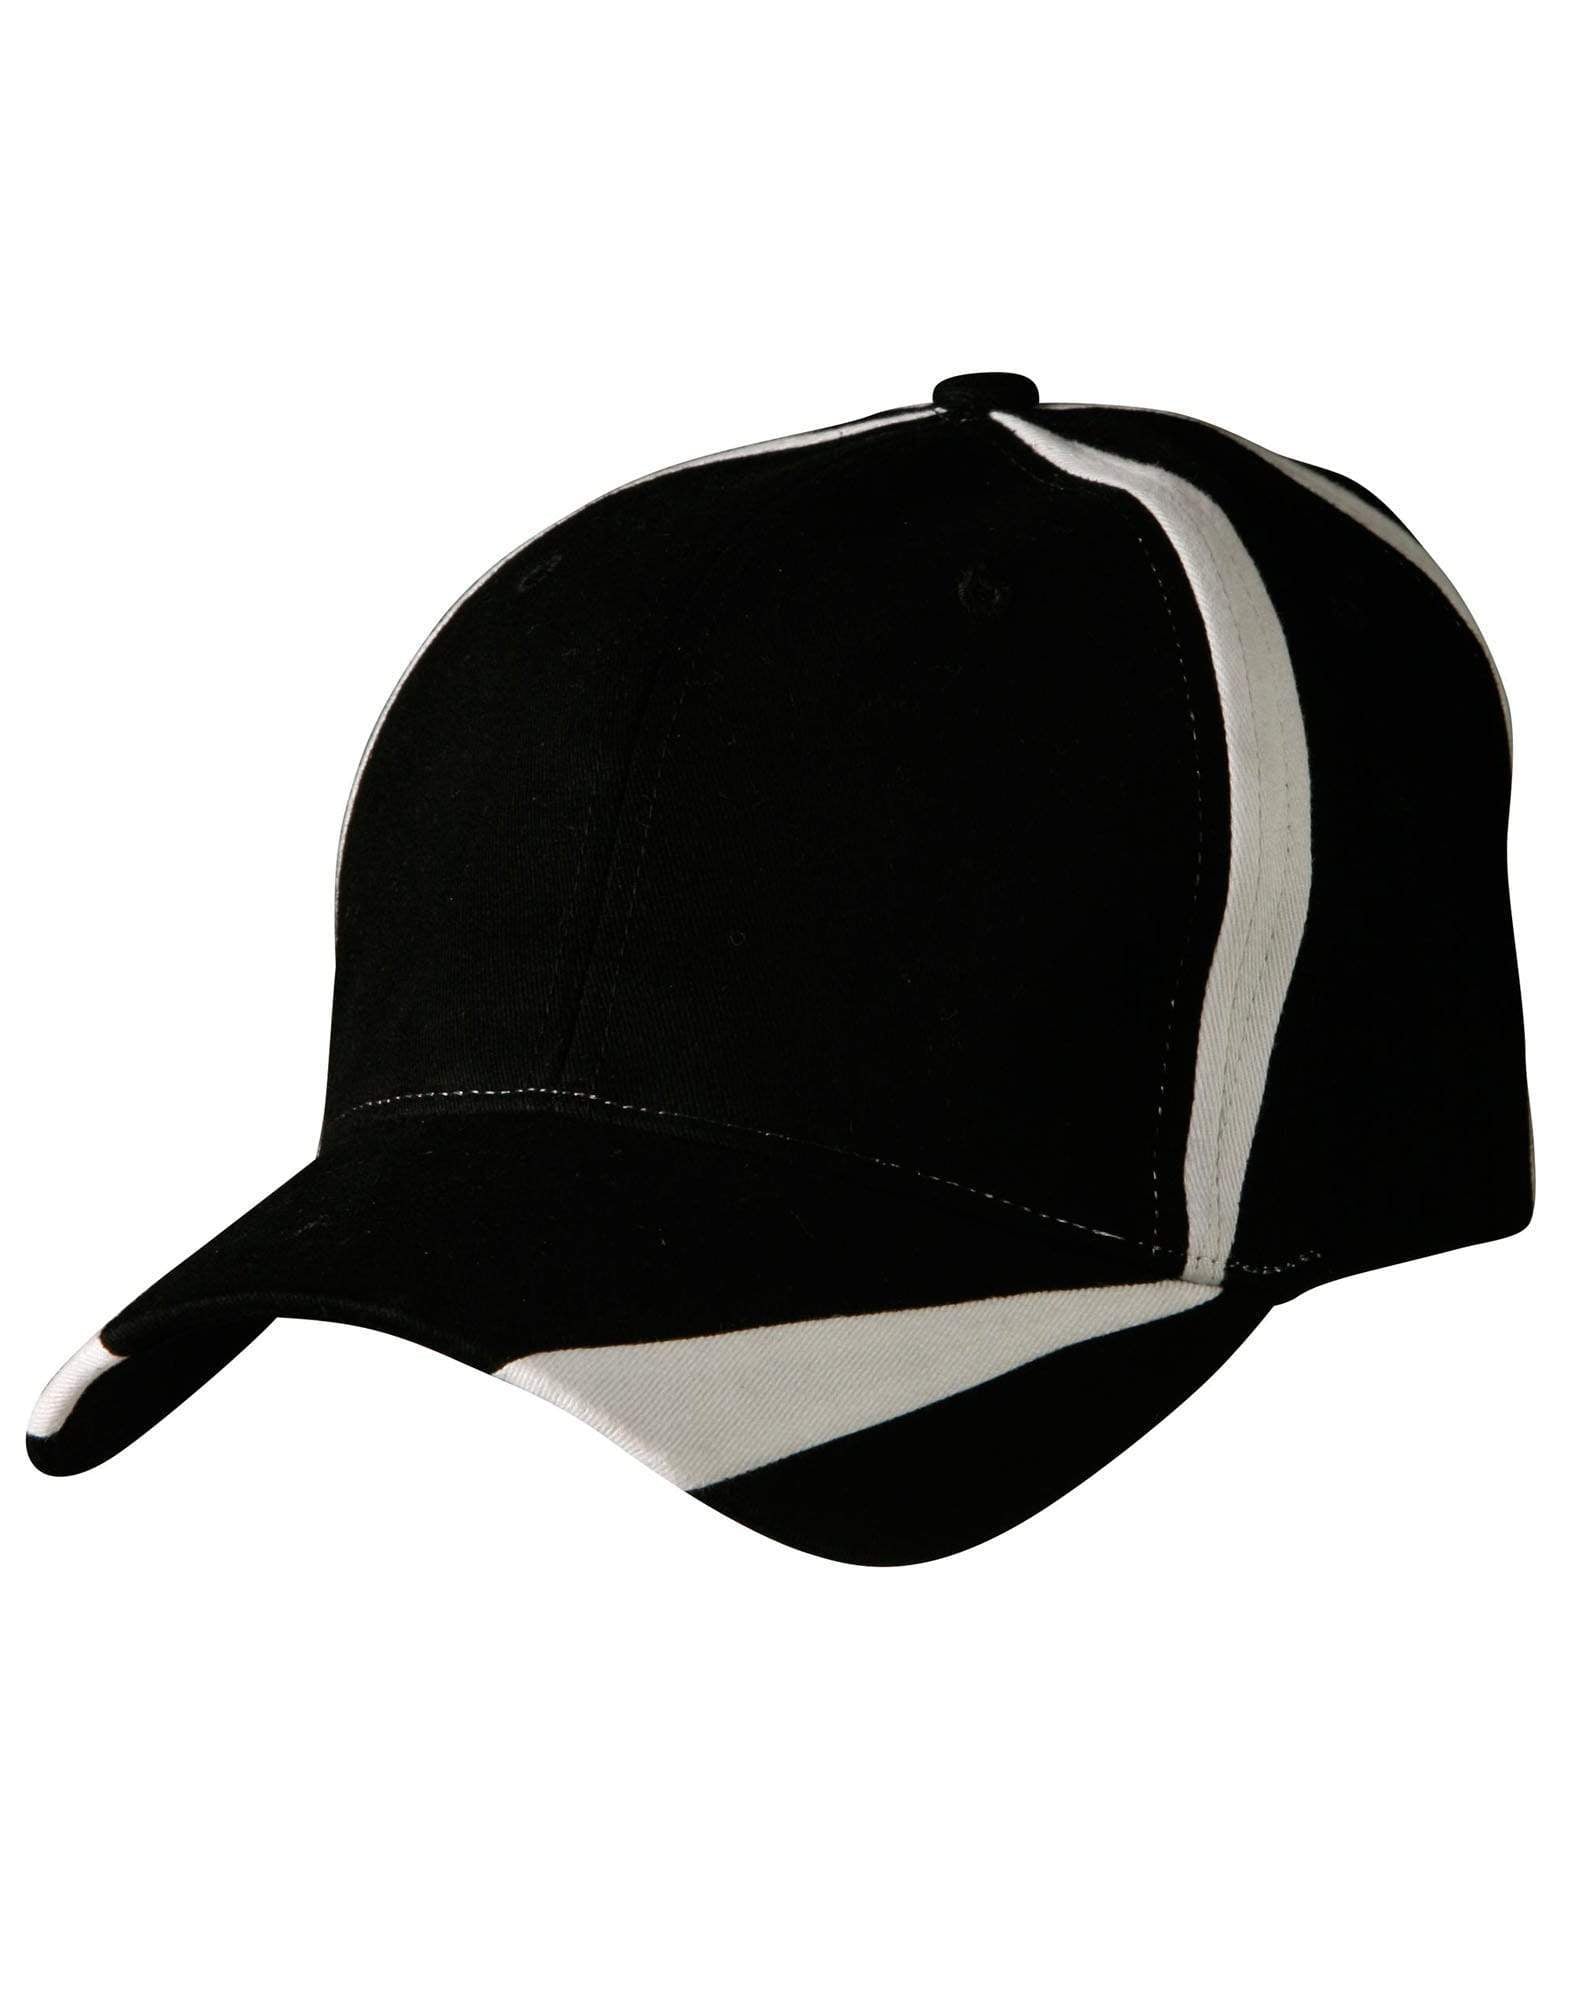 Winning Spirit Active Wear Black/White / One size Peak & Crown Contrast Cap Ch81